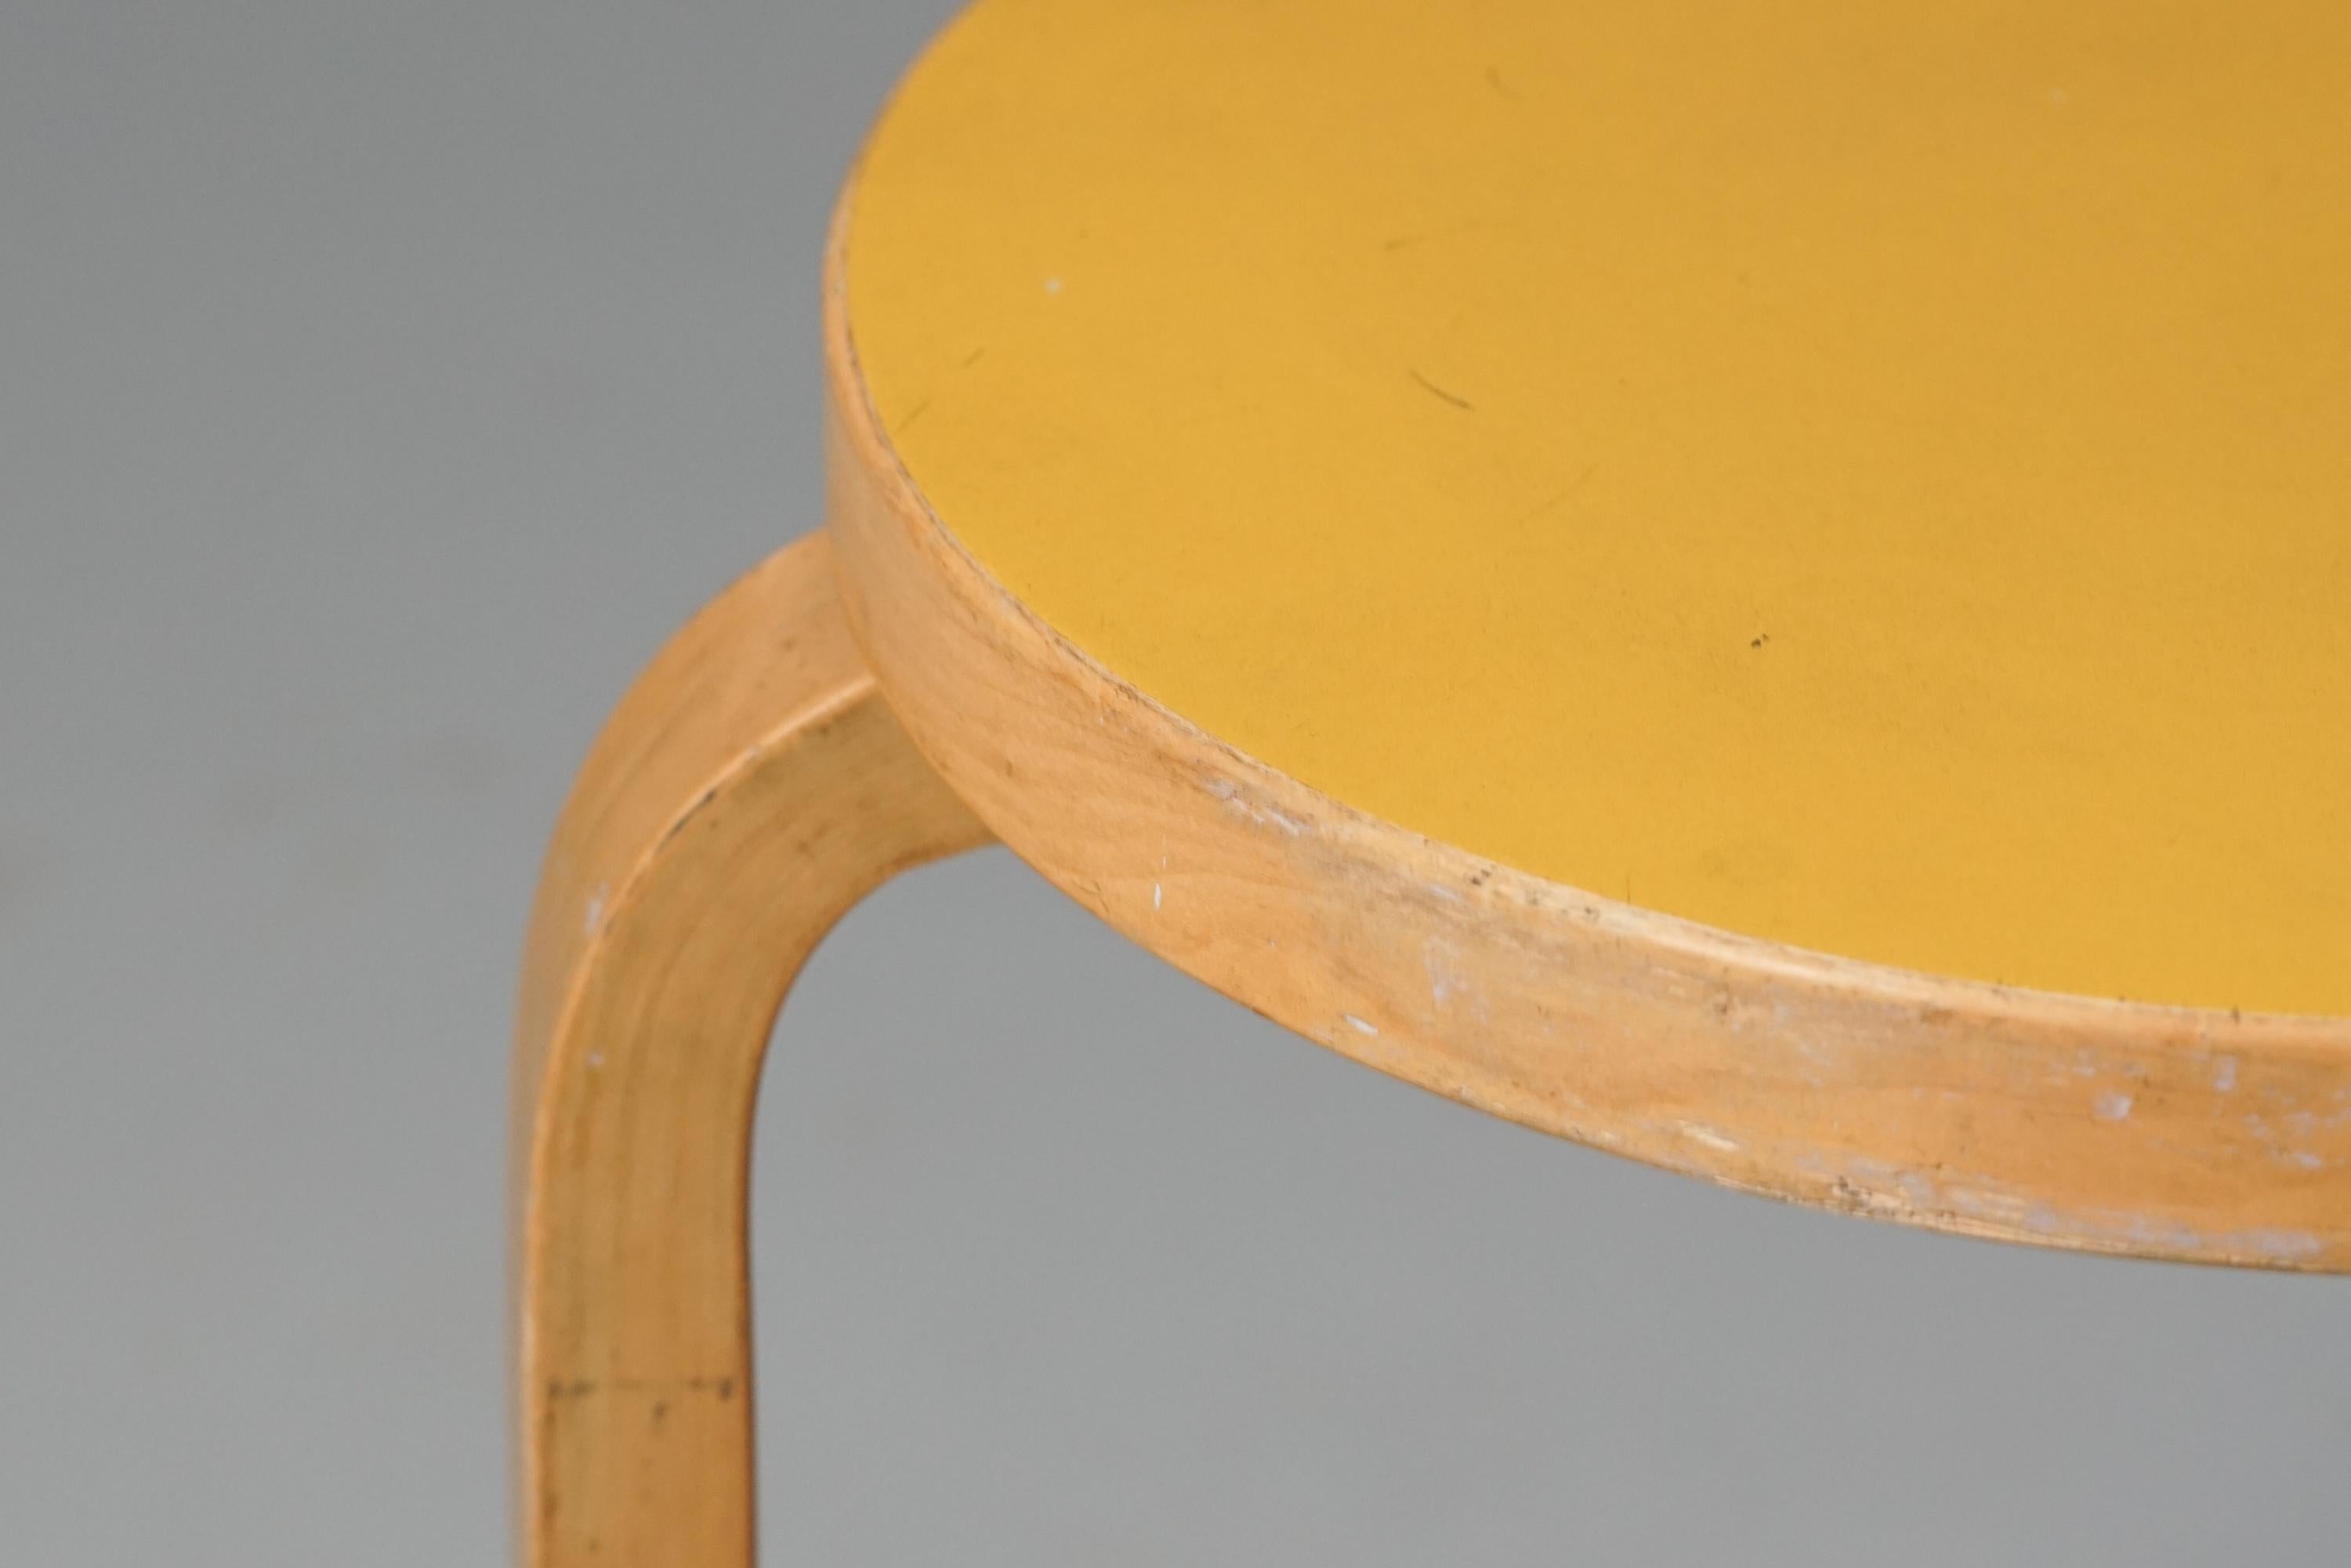 Tabouret modèle 60, conçu par Alvar Aalto, fabriqué par Artek, années 1950/1960. Cadre en bouleau, linoléum de couleur rare. Bon état vintage, patine et usure mineure correspondant à l'âge et à l'utilisation. 

Alvar Aalto (1898-1976) est